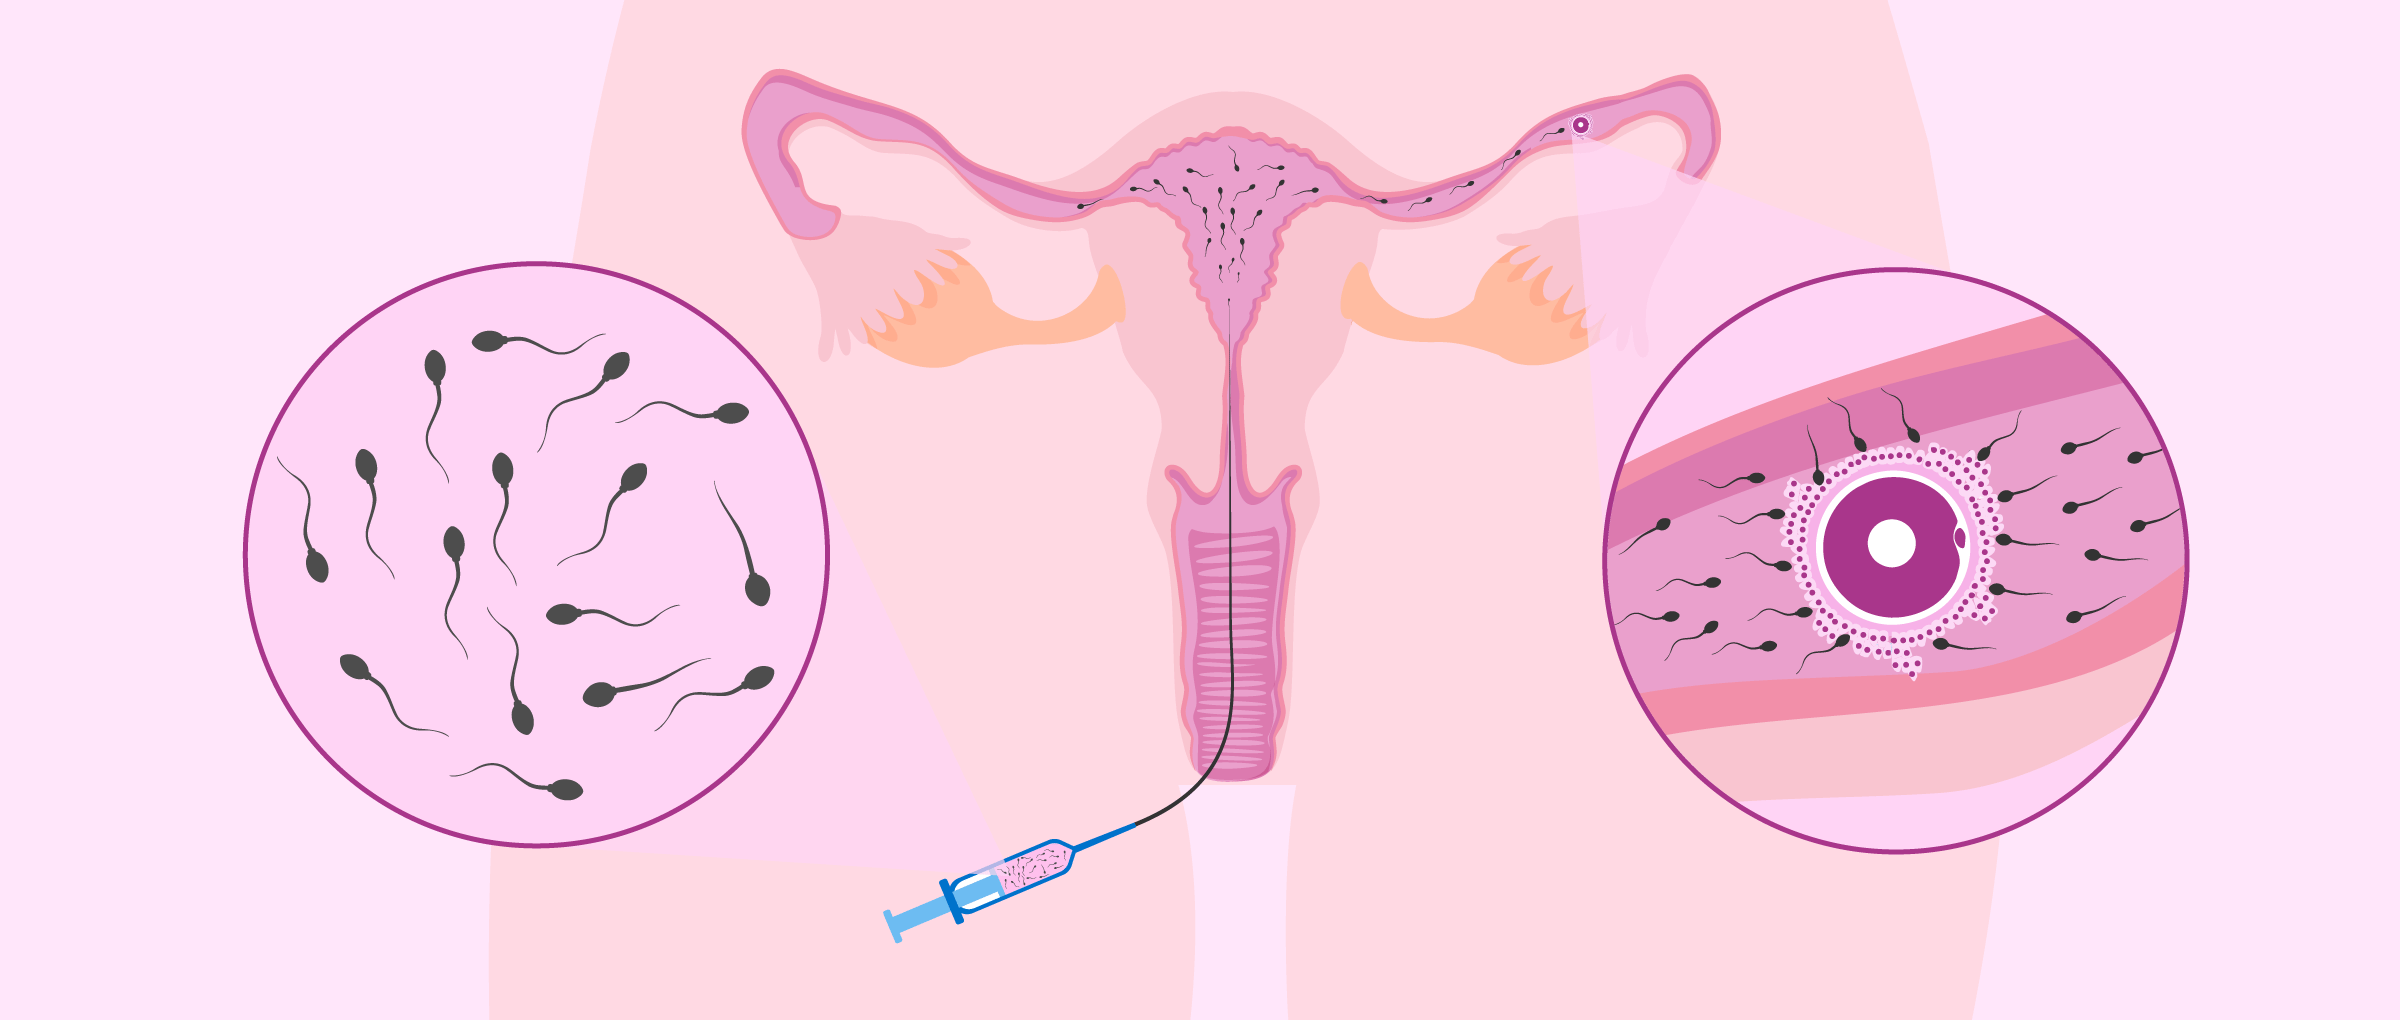 La inseminación artificial intrauterina